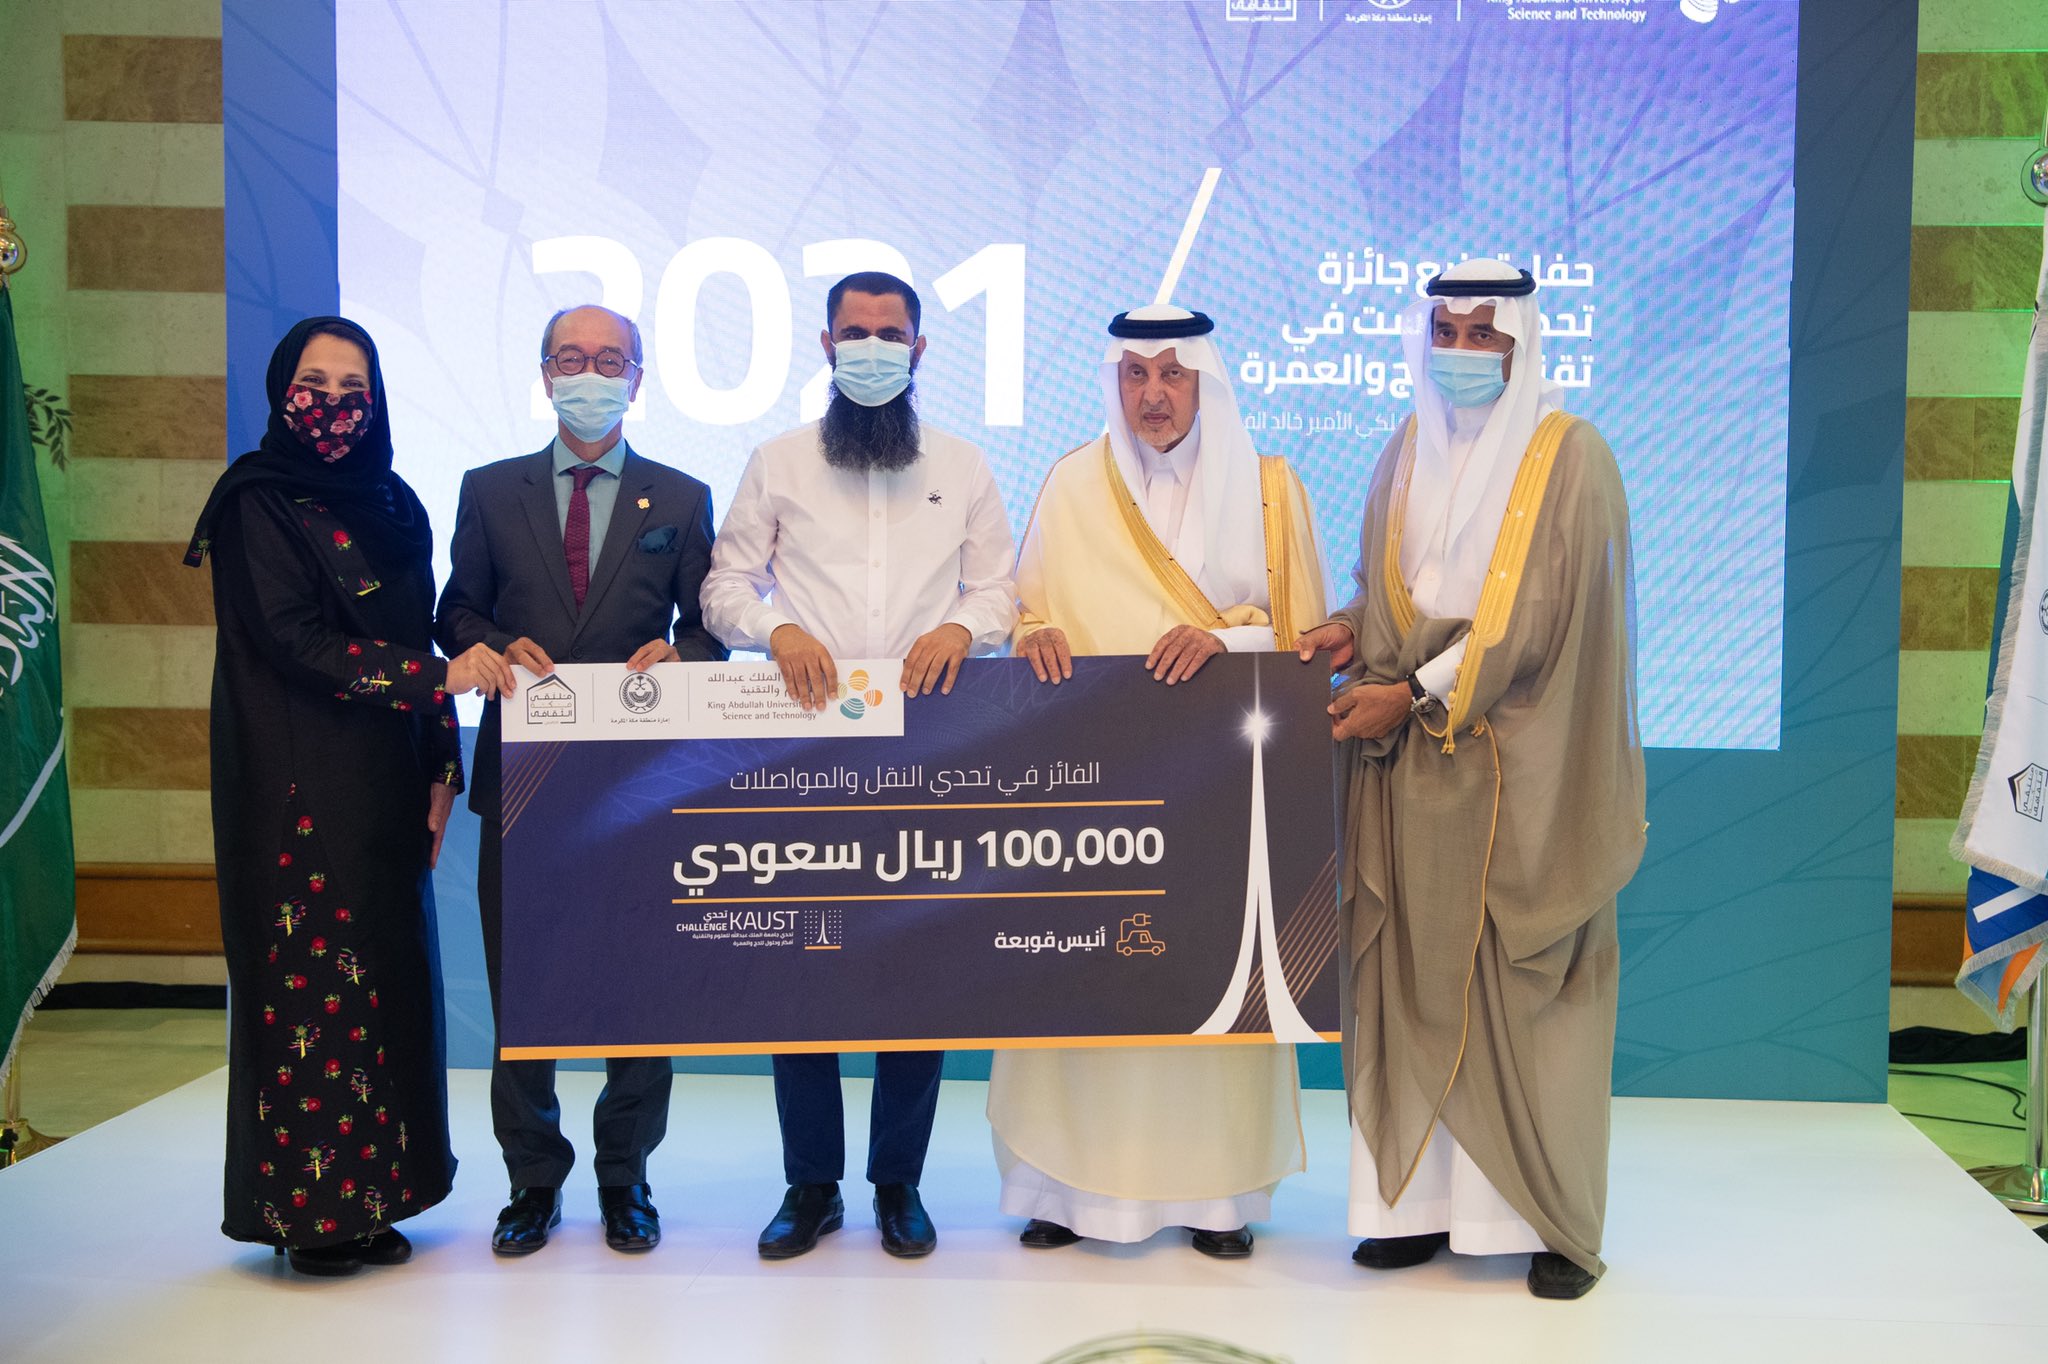 خالد الفيصل يسلم جوائز مسابقة تحدي جامعة الملك عبدالله للعلوم والتقنية